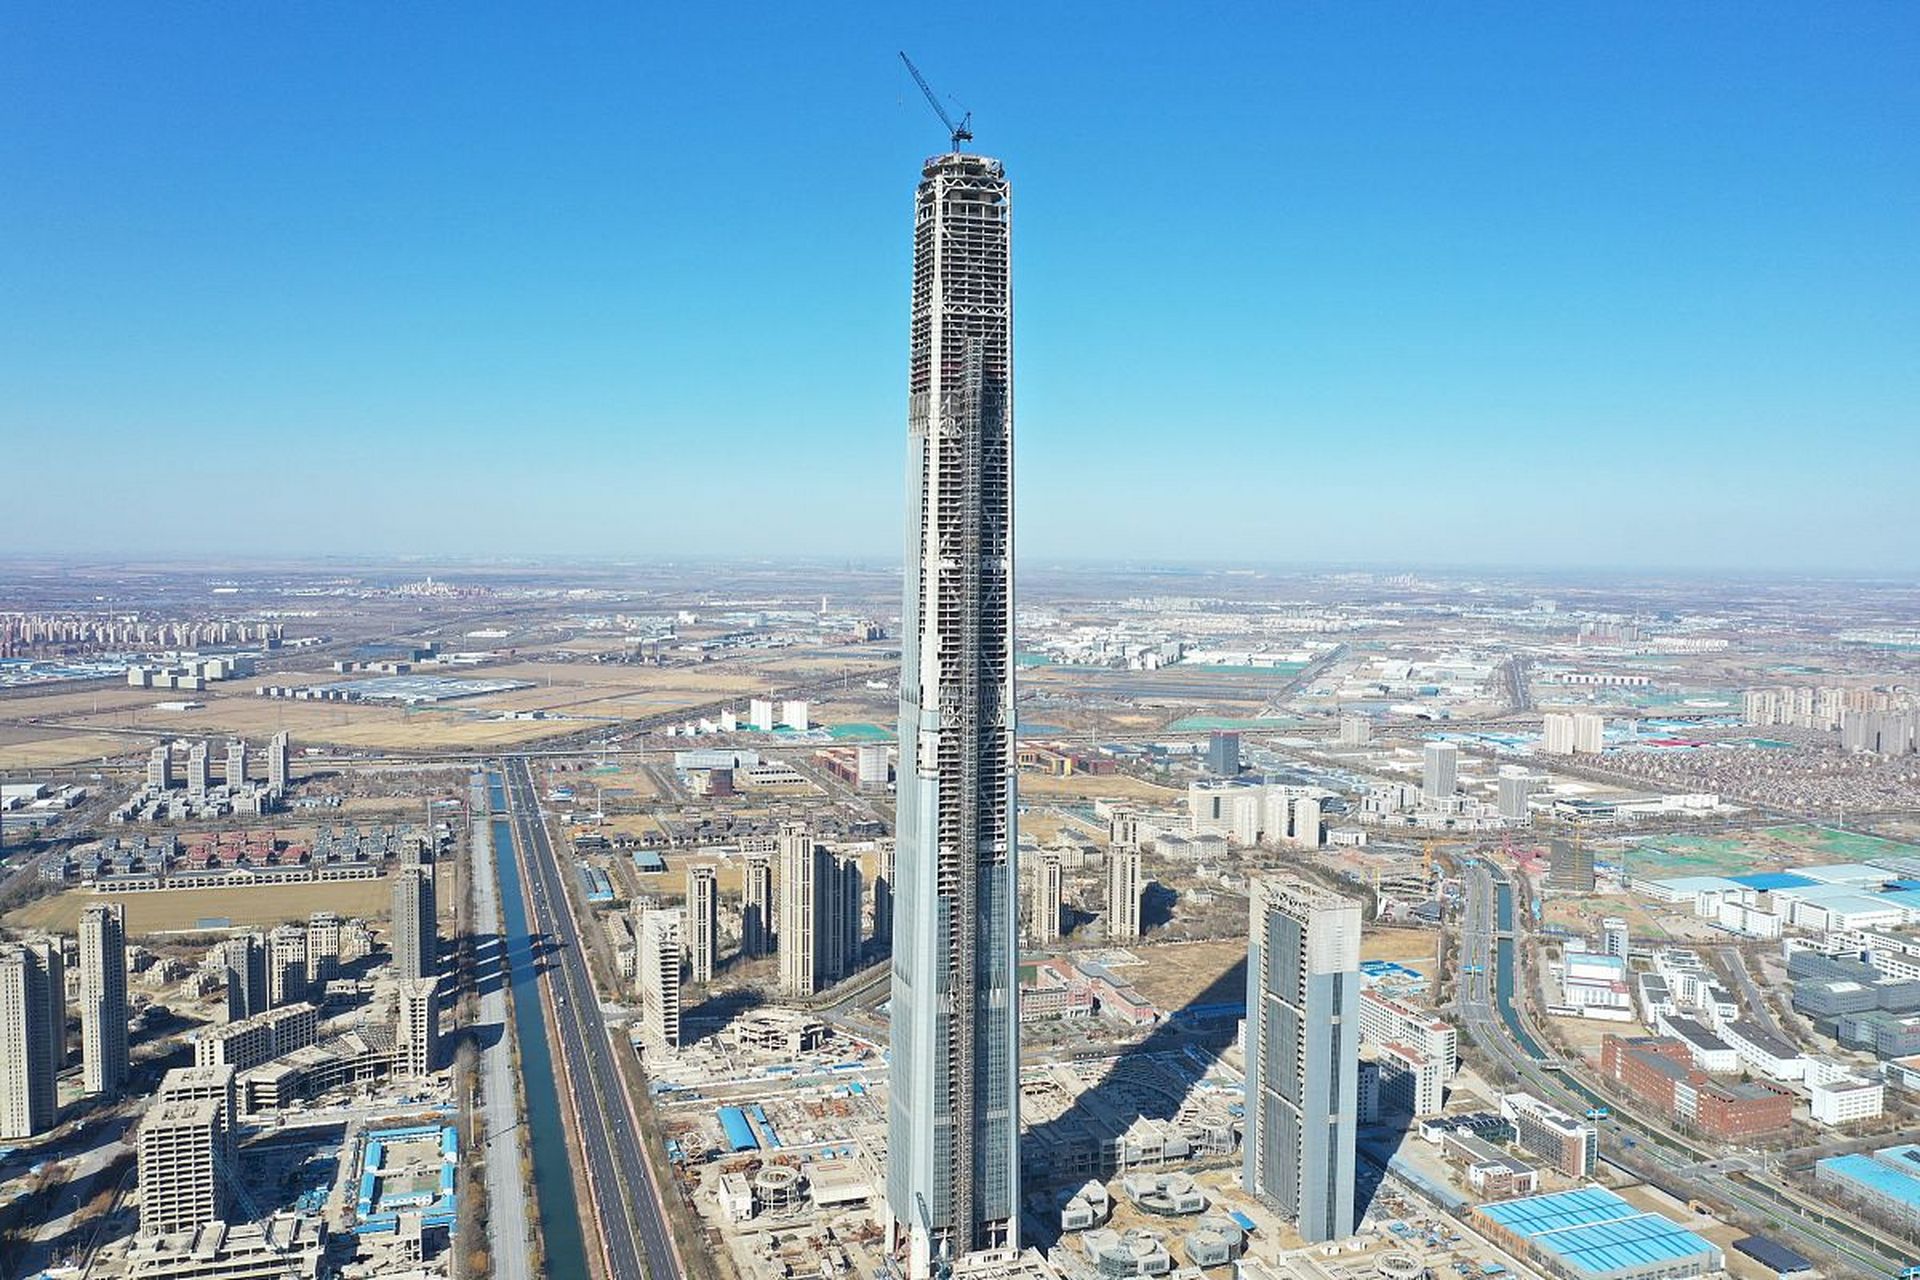 天津117大厦,世界最大的烂尾楼,我突发脑洞,能不能改建成立体式陵园